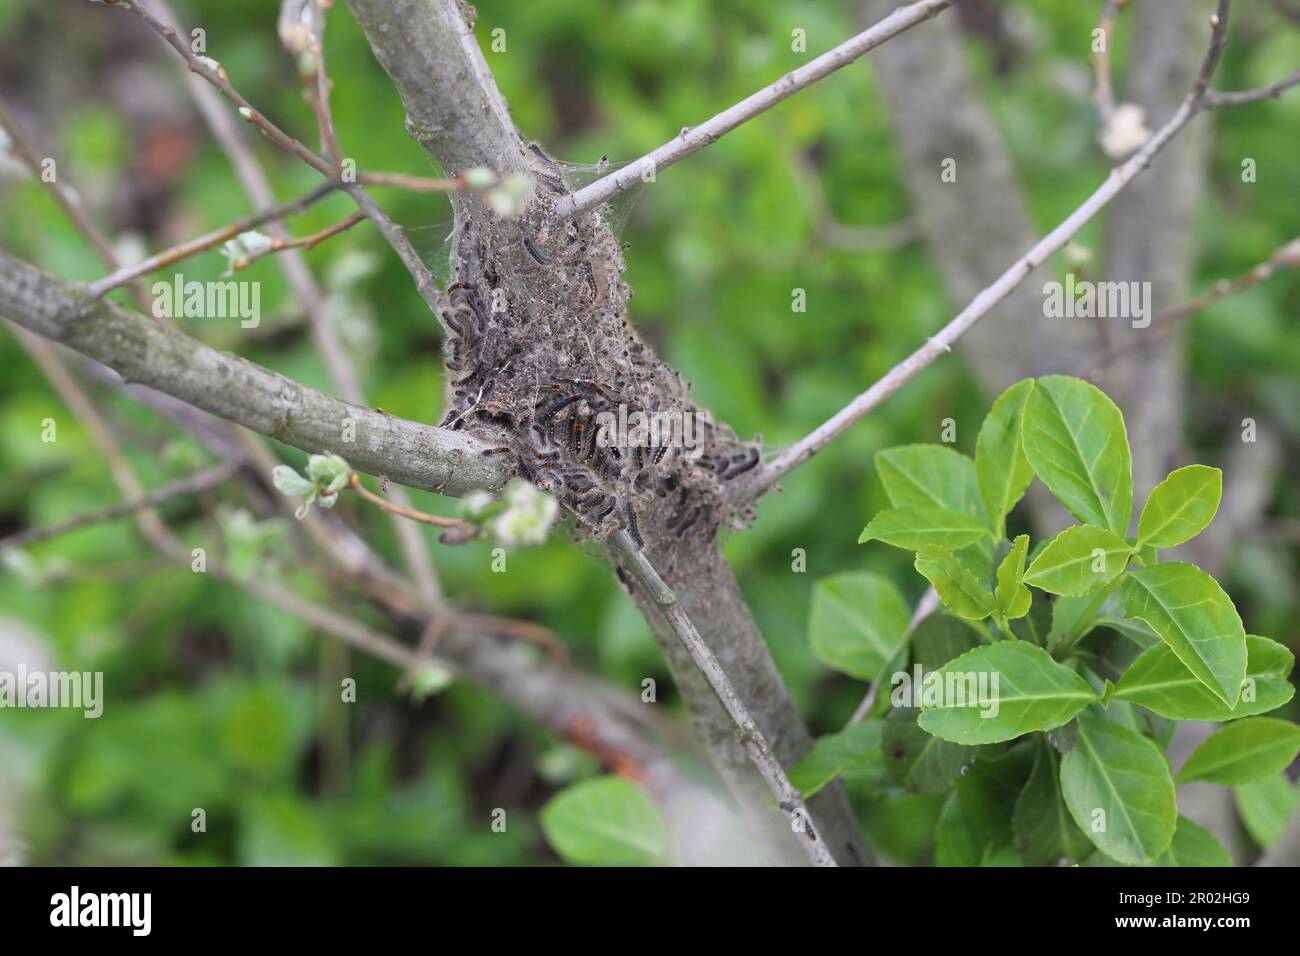 Braunschwanzraupen (Euproctis chrysorrhoea) aus dem Winternest. Wichtige Schädlinge vieler Bäume und Sträucher, einschließlich Obstbäumen. Stockfoto